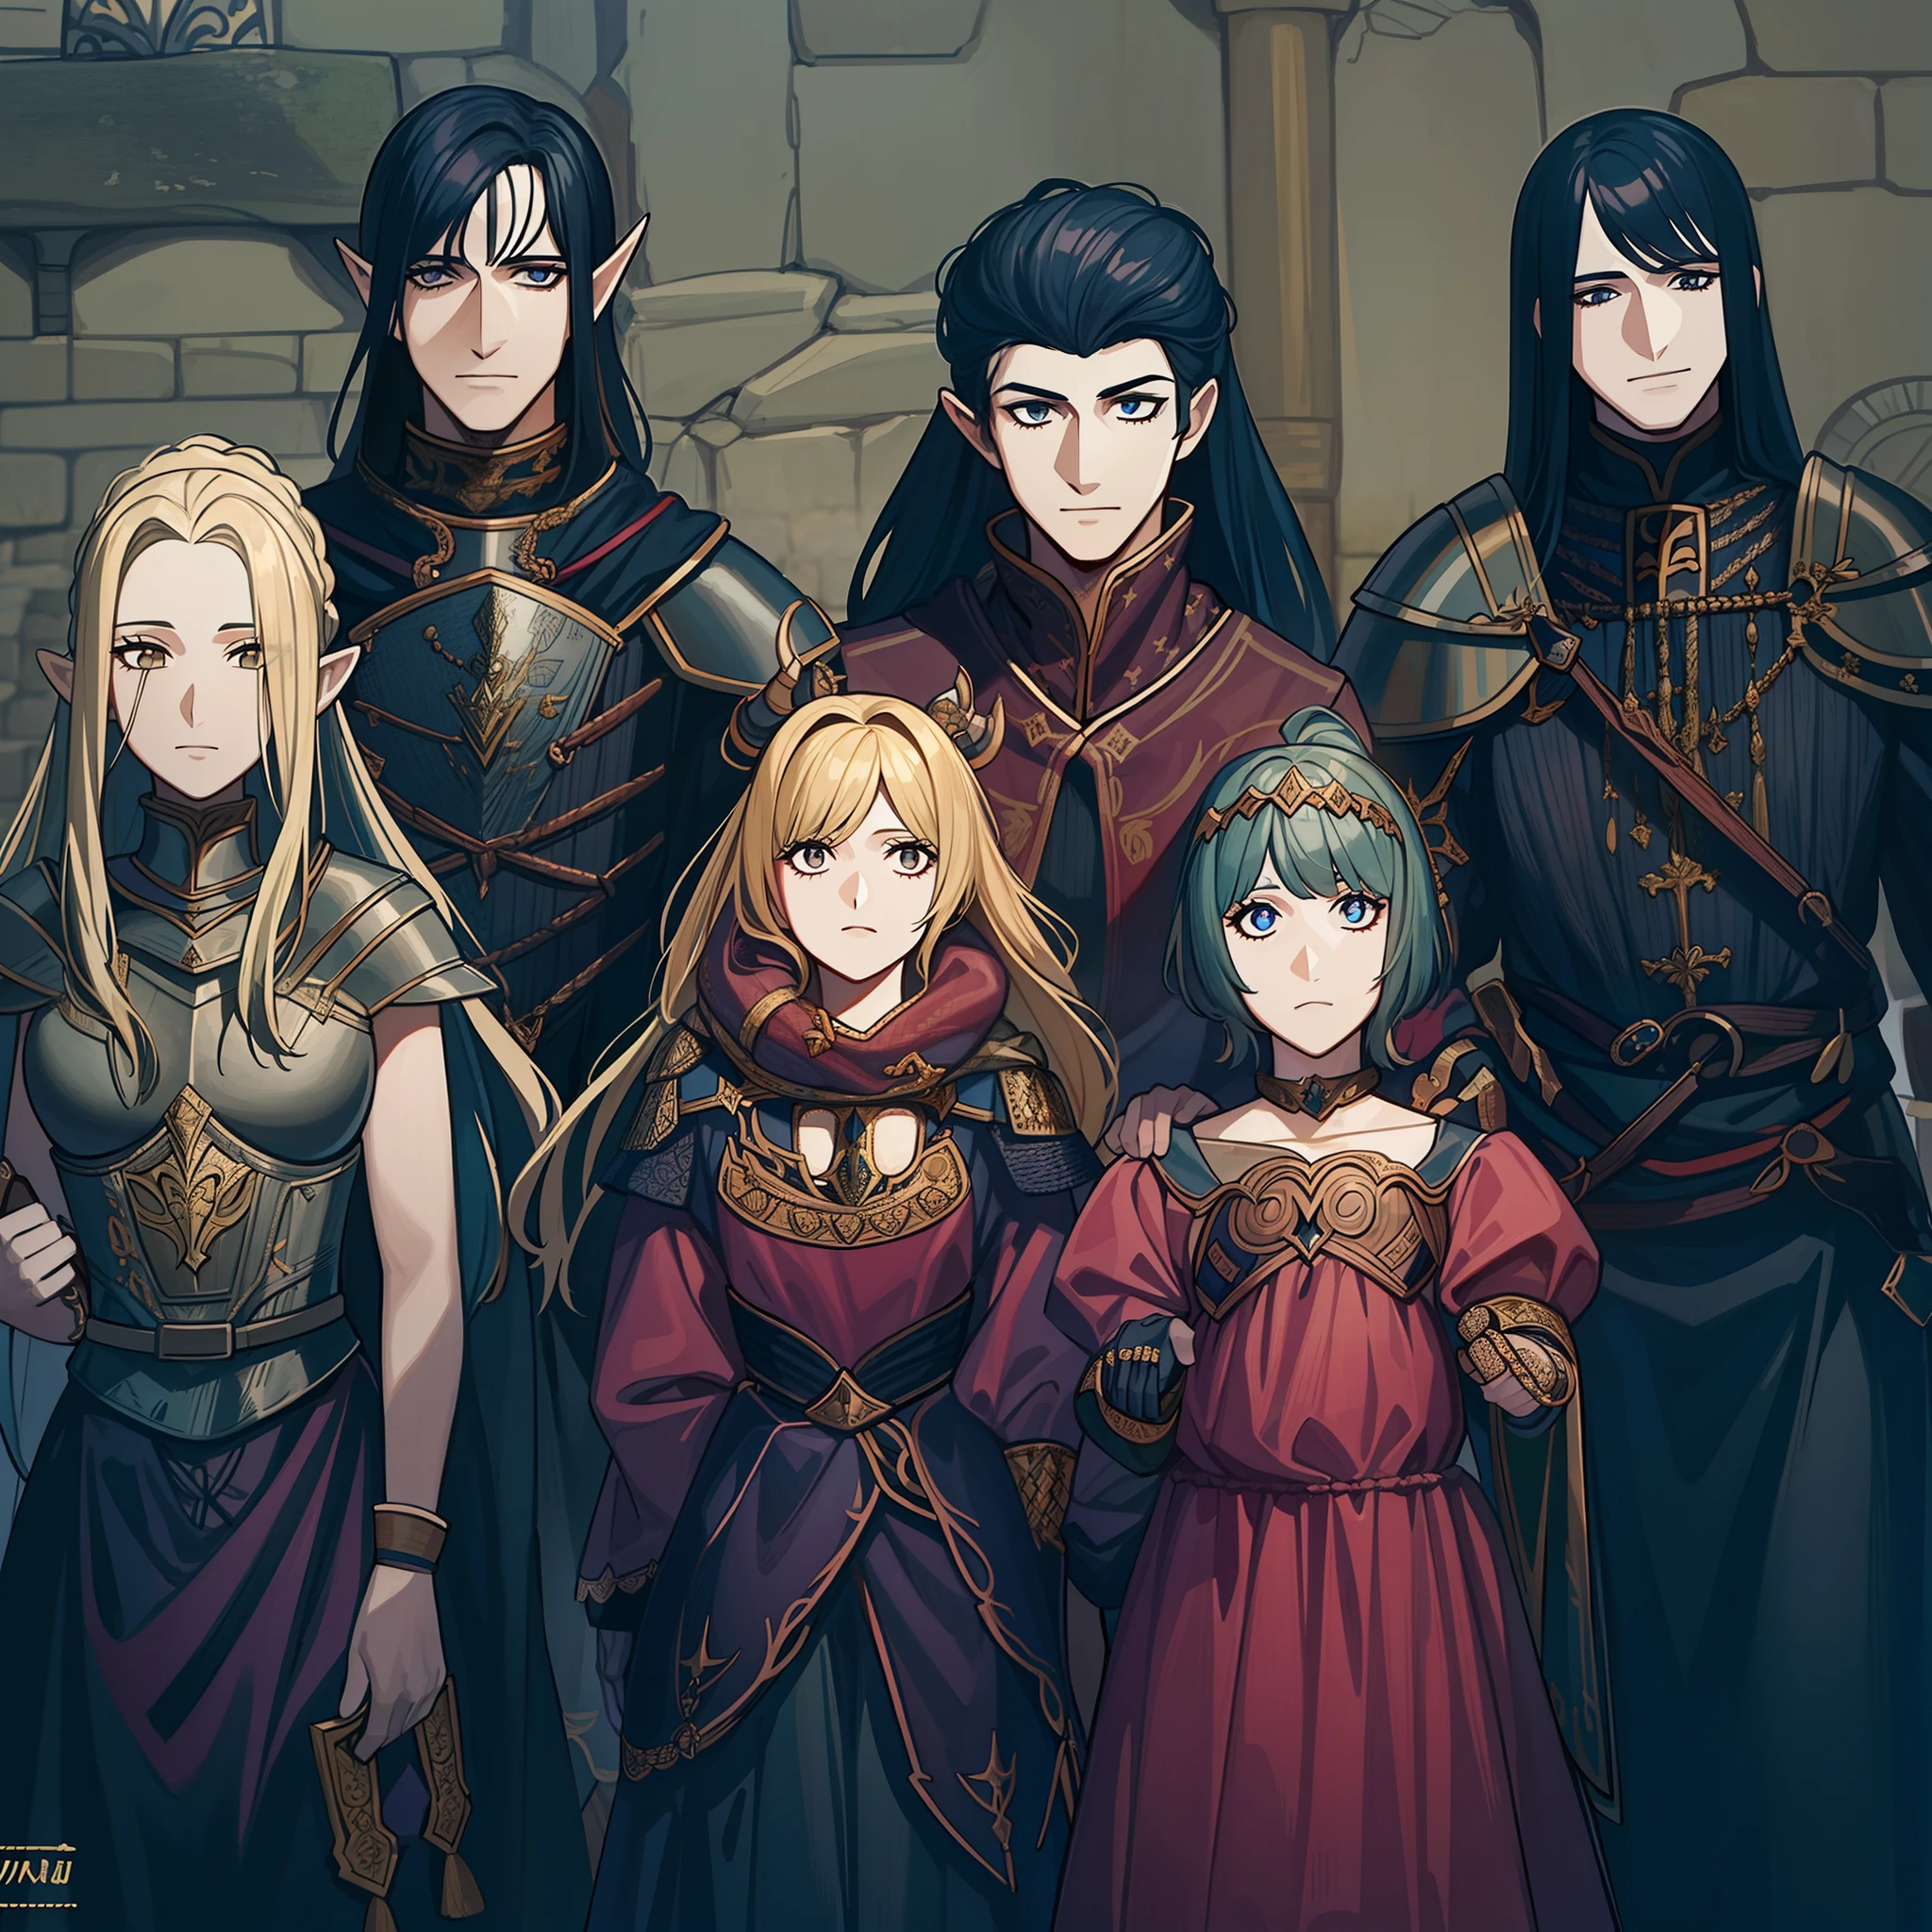 uma fotografia de uma família na época medieval,sendo 4 elfos menores com outros 2 elfos sendo os pais,a mulher elfa com uma armadura vermelha e o pai elfo com um olhar calmo, estilo manga escura